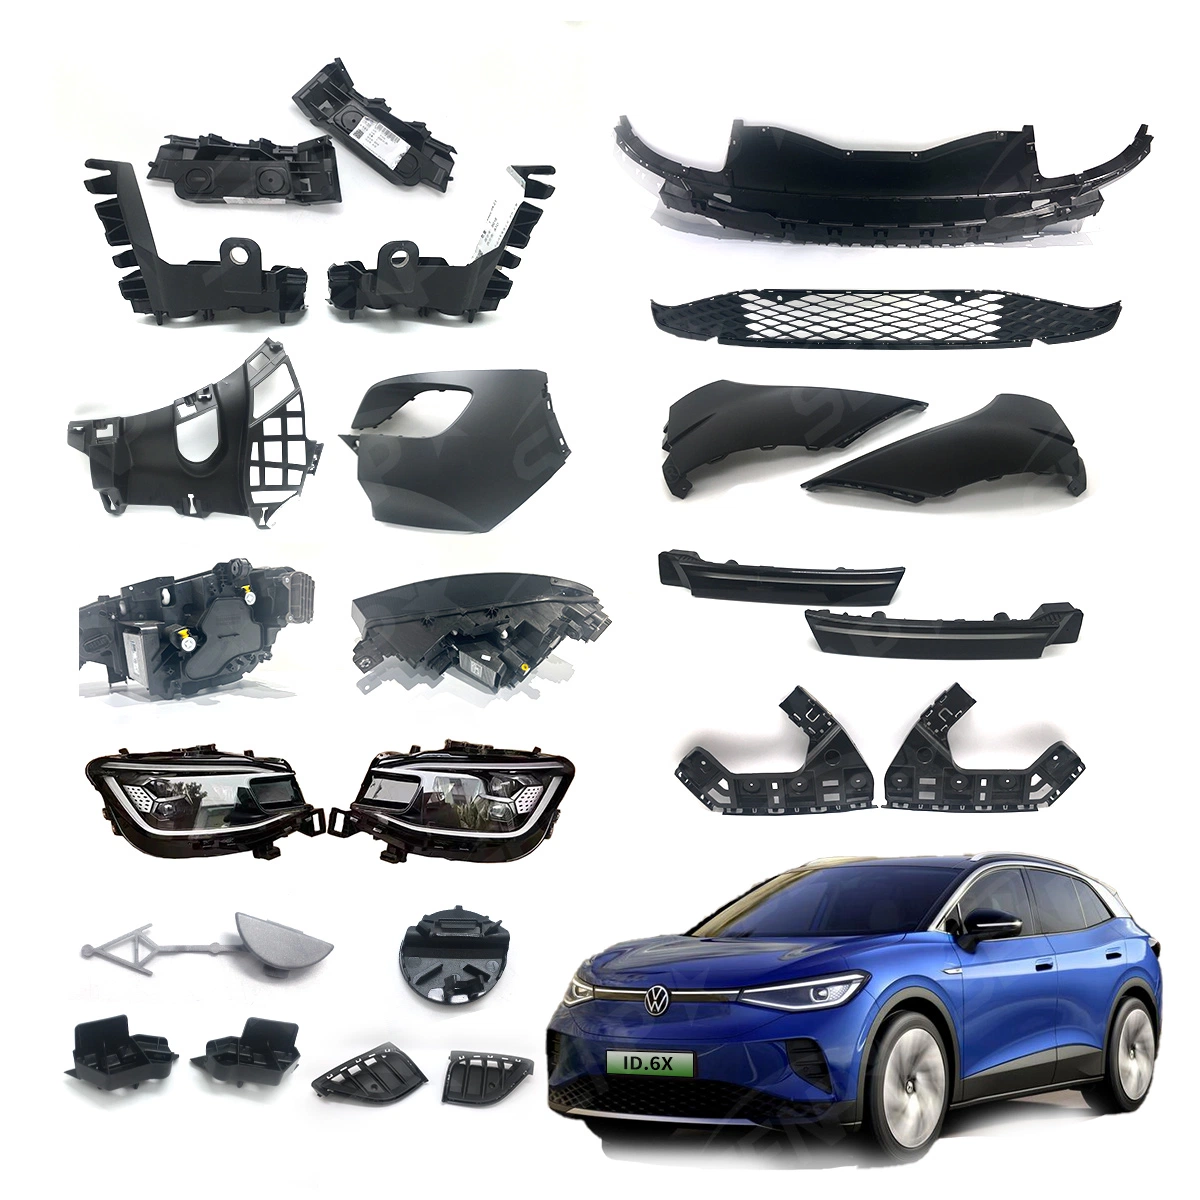 Corpo de qualidade Original Senp System Kit Autopeças adequados para a Volkswagen Veículos Eléctricos: ID4, ID6, Carros Eléctricos Autopeças